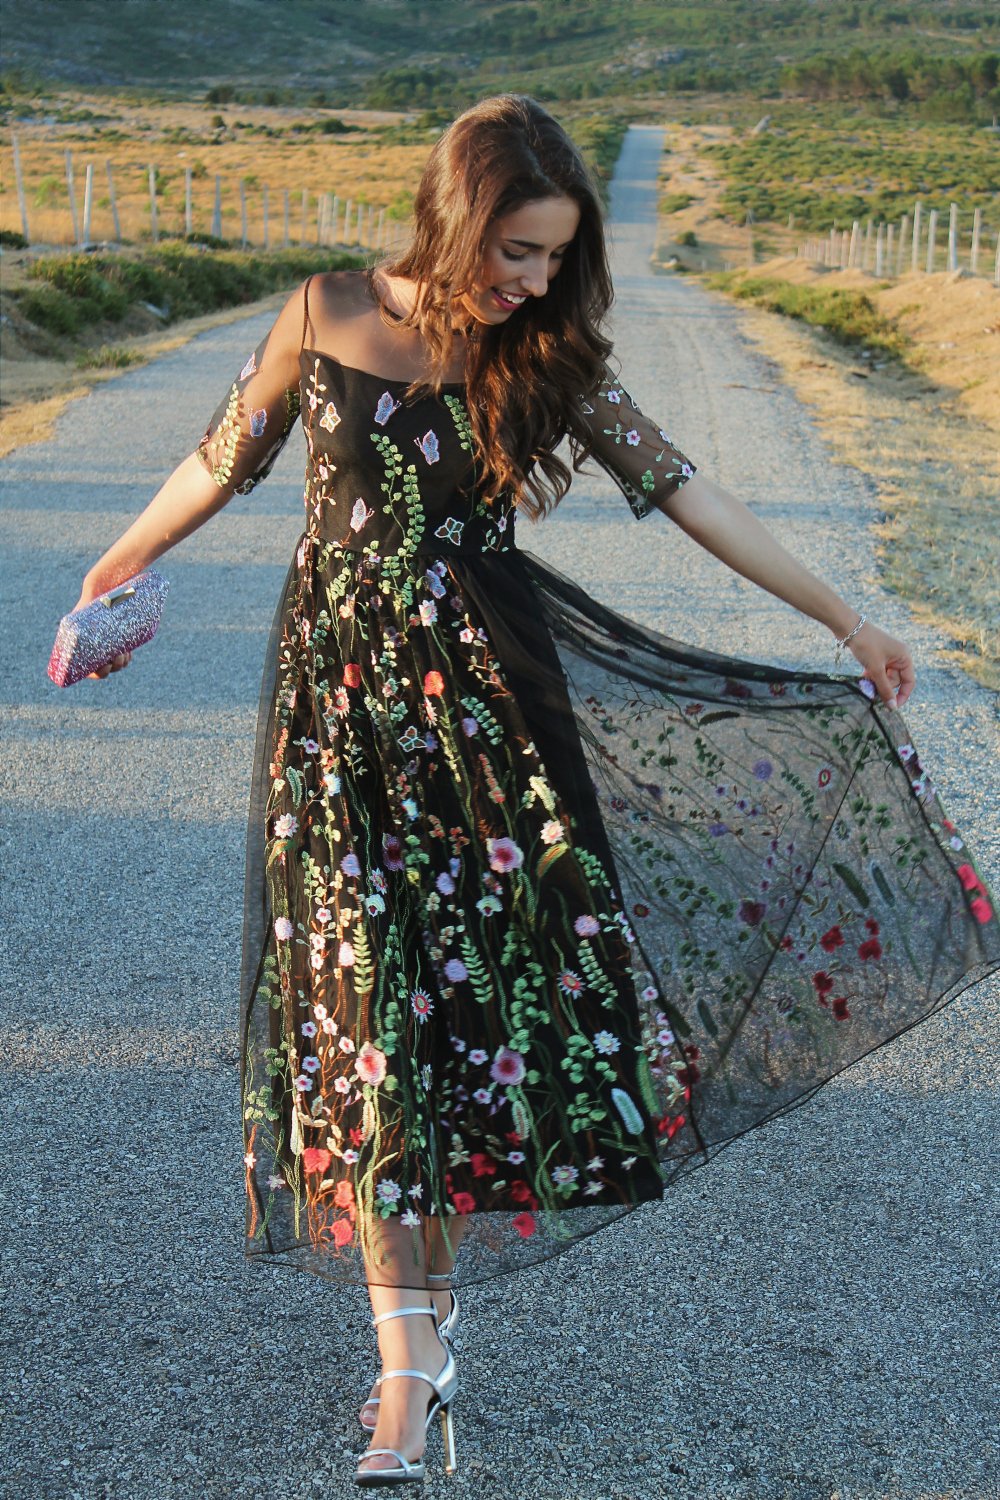 relajarse harina Sensible 19 Ideas de vestidos para usar en una boda al aire libre